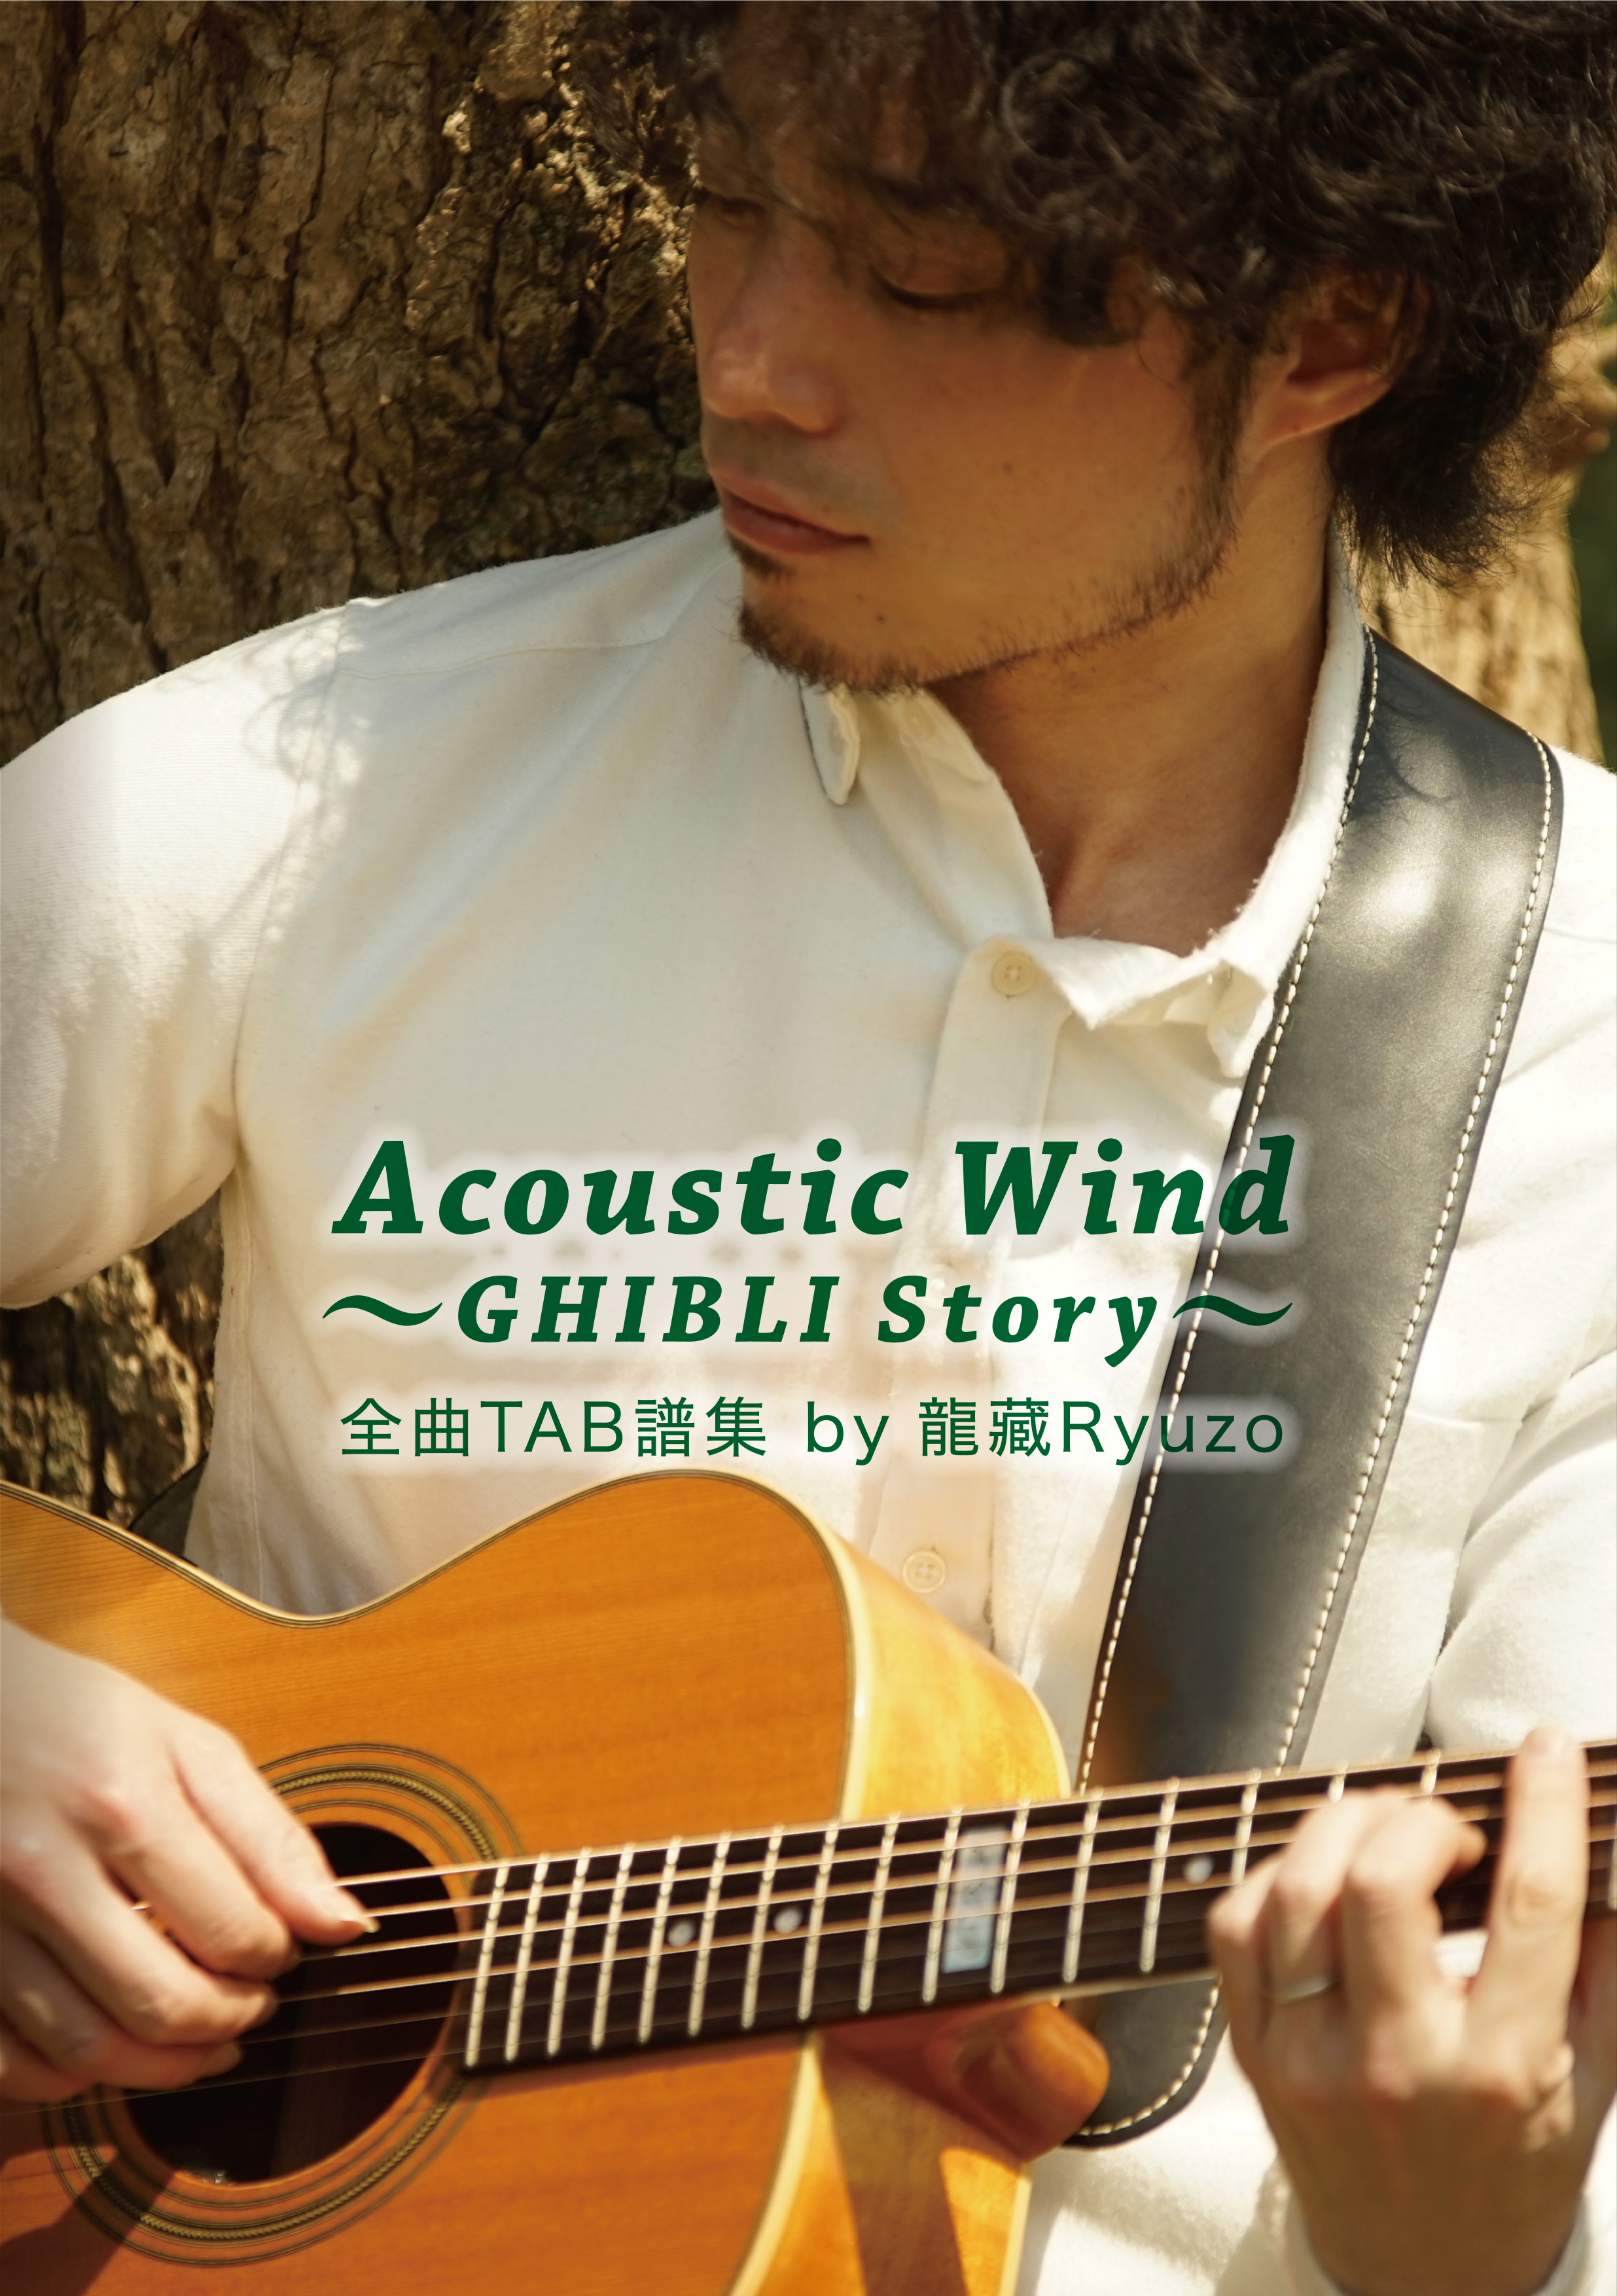 Acoustic Wind〜GHIBLI Story〜 全曲TAB譜集 by 龍藏Ryuzo【ネコポス発送】